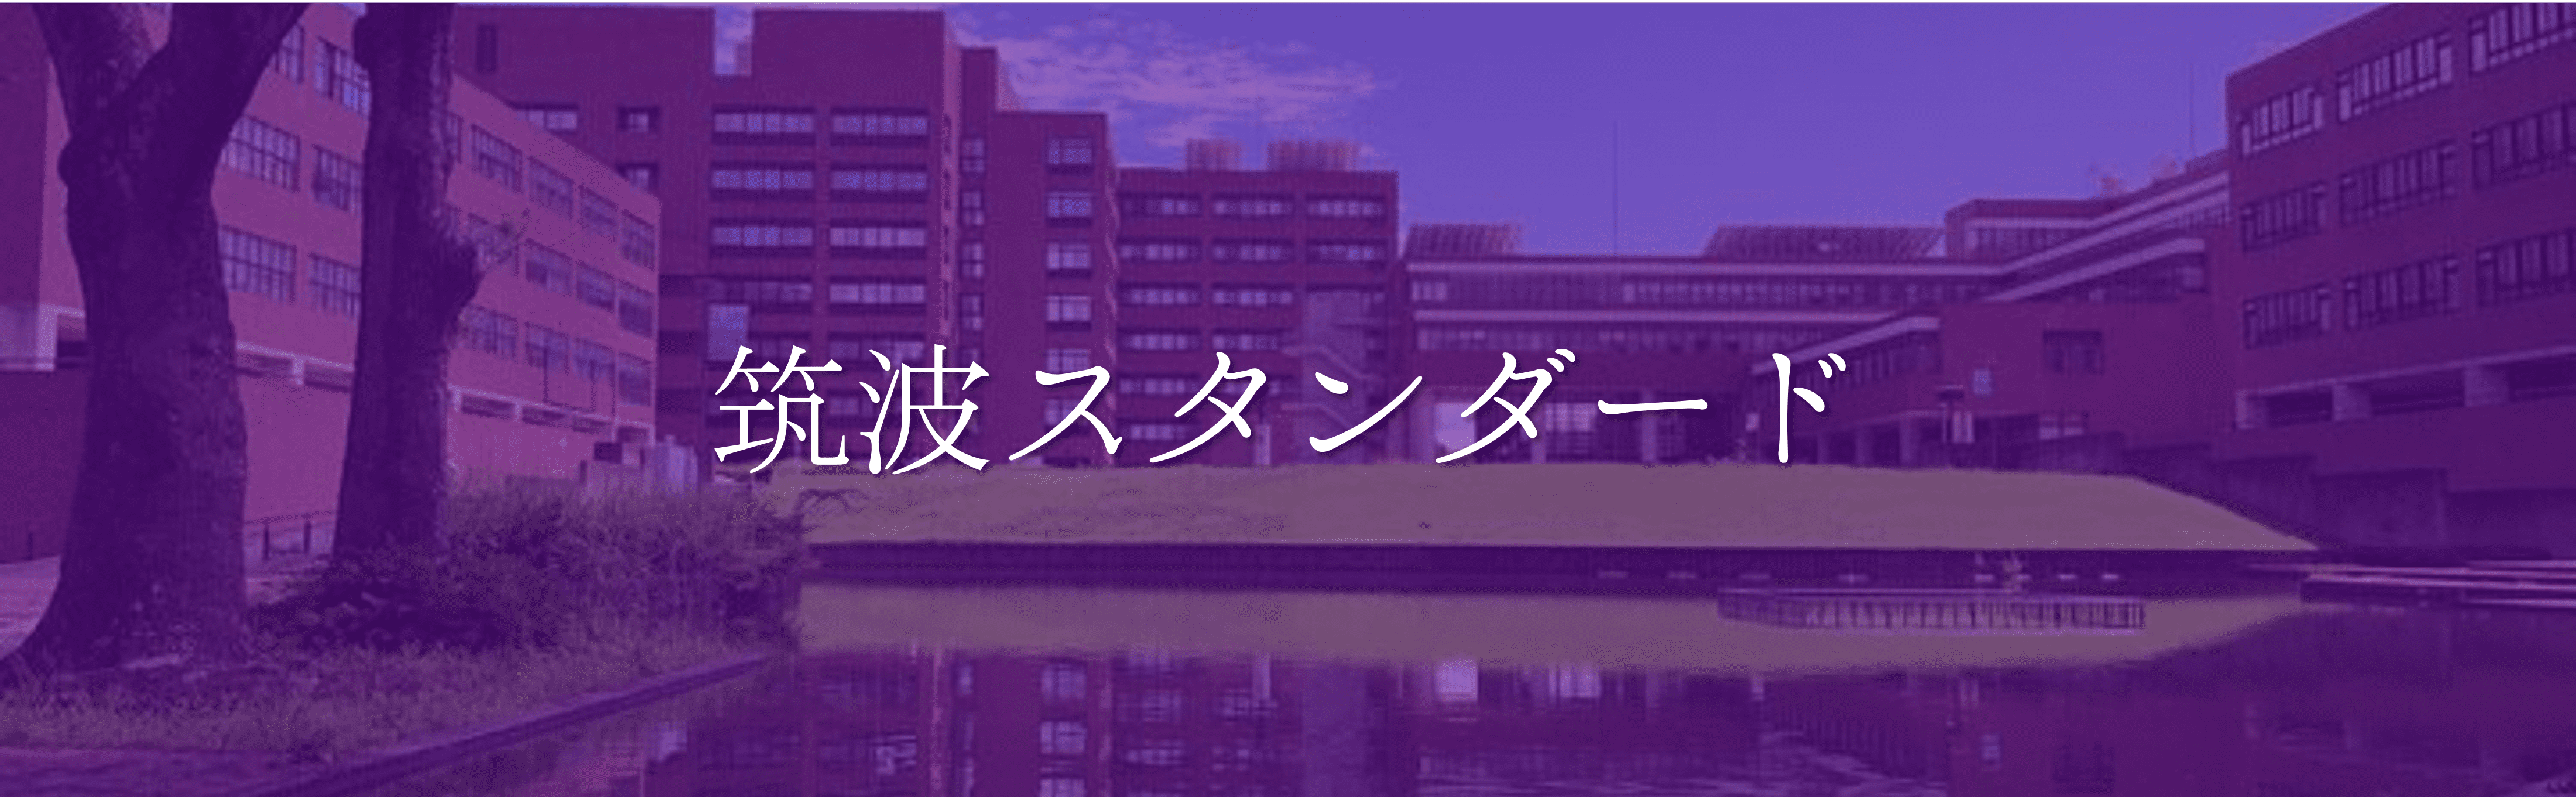 筑波大学モットー